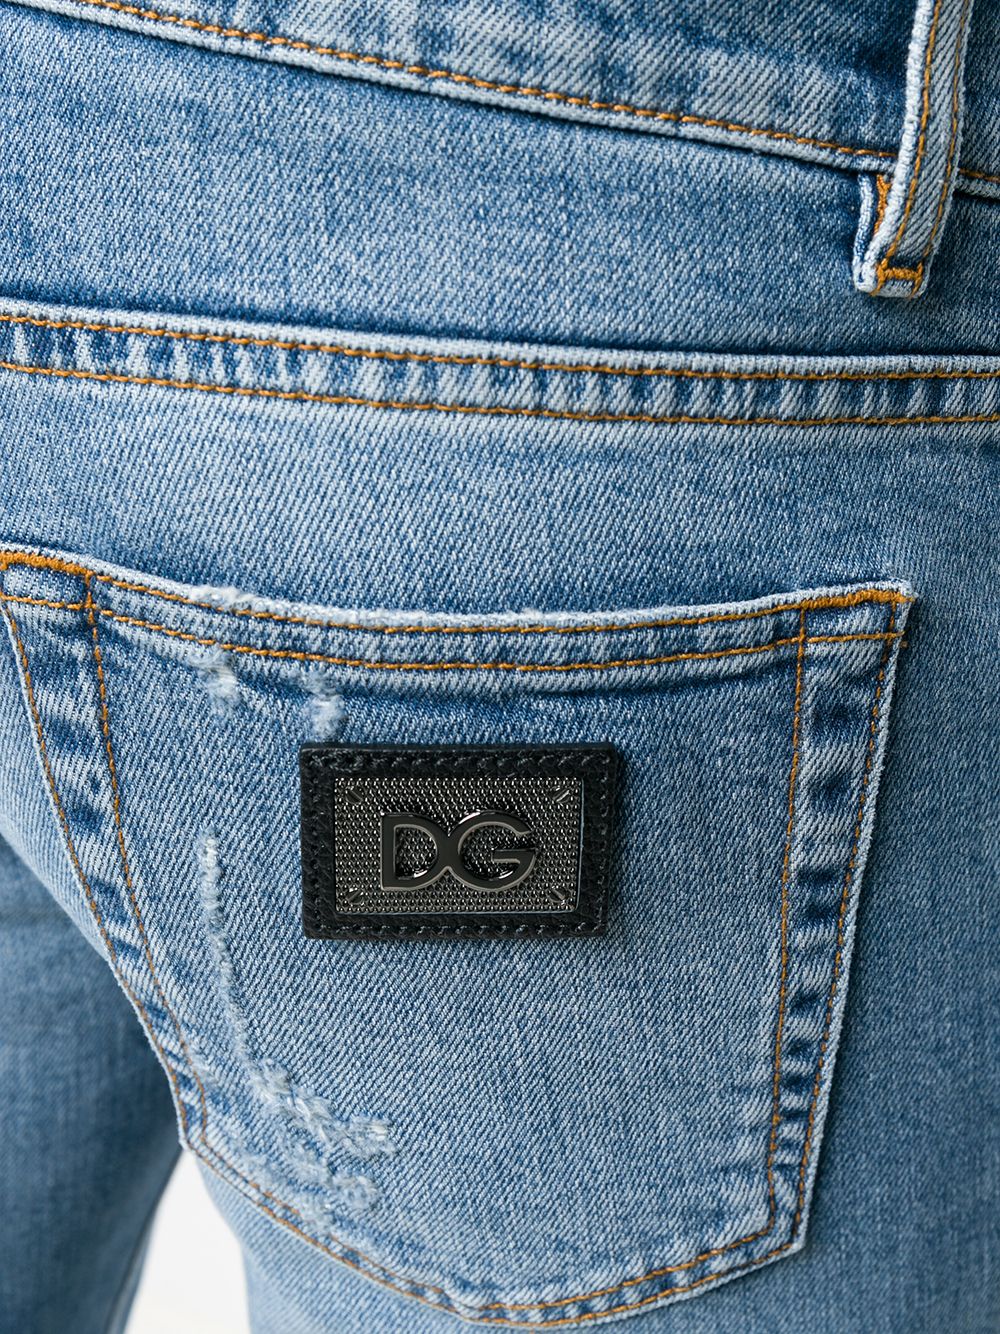 фото Dolce & gabbana джинсы кроя слим с эффектом потертости